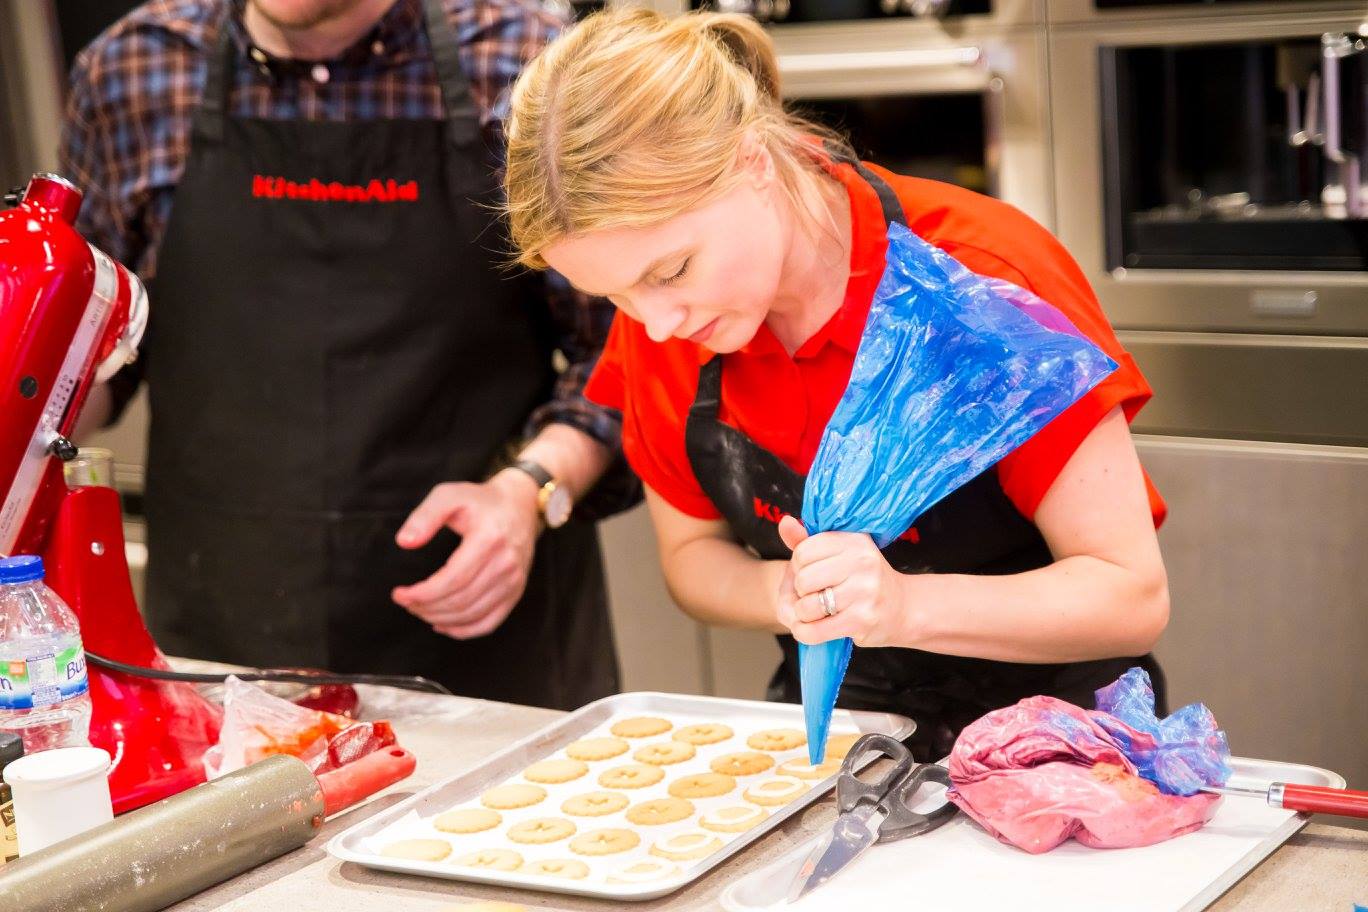 KitchenAid launches Iconic Fridge with Iconic-Design 6